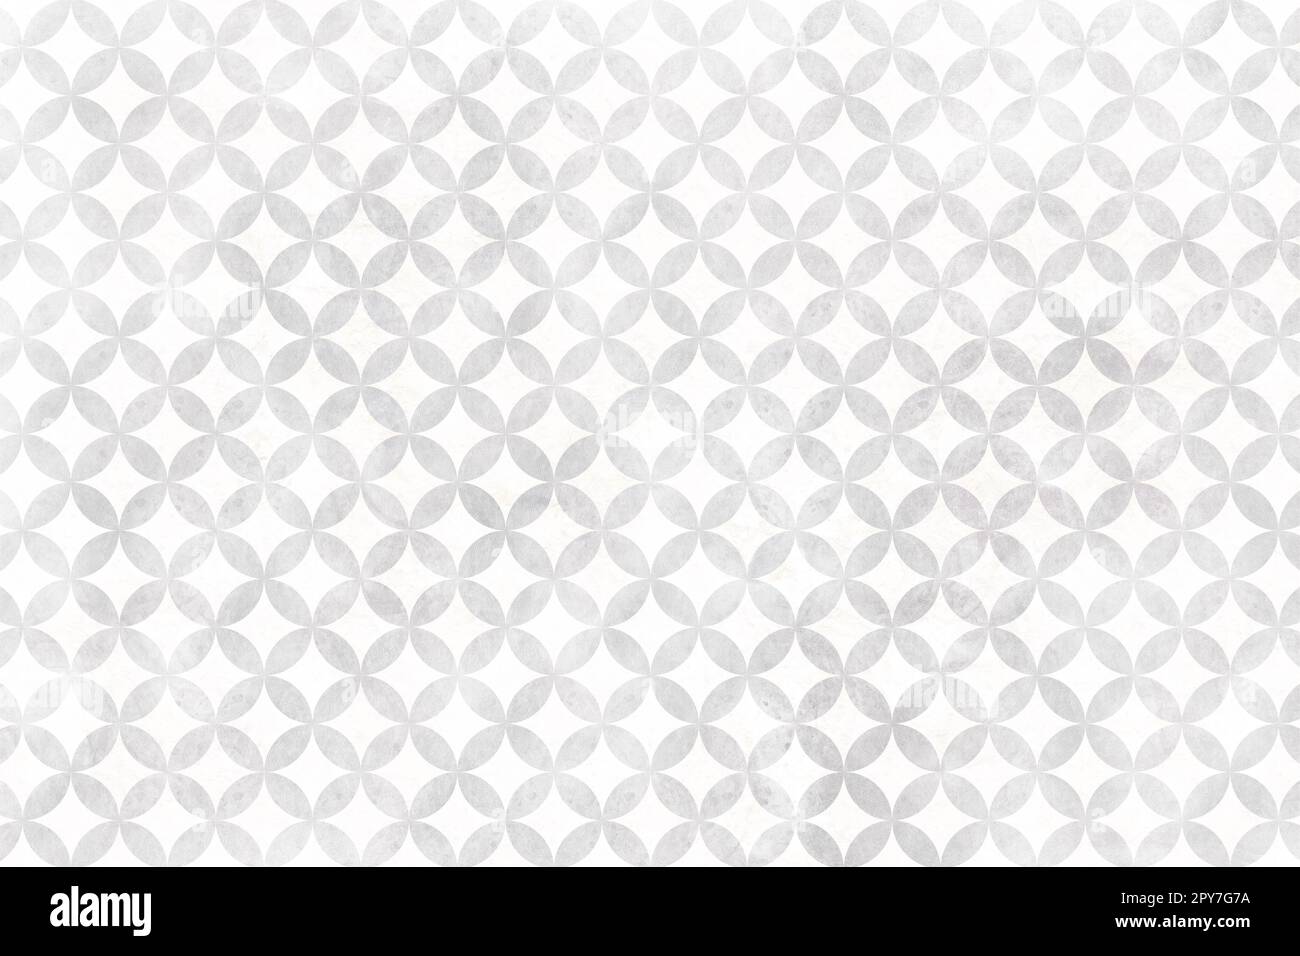 Arrière-plan à motif cloisonné argenté et blanc. Motif japonais traditionnel. Texture de style de papier japonais. Carreaux ronds élégants et magnifiques Banque D'Images